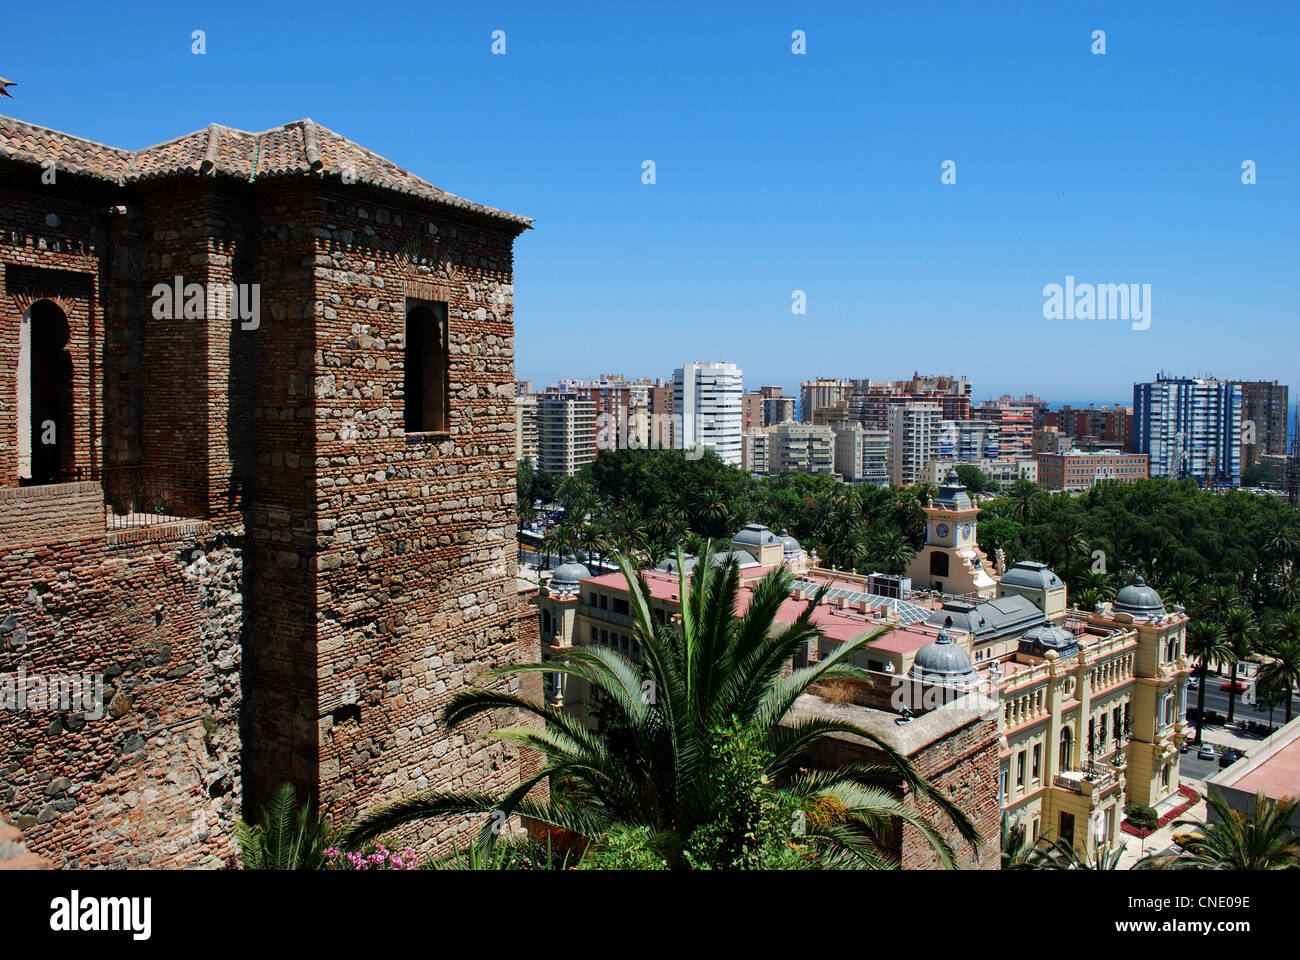 Torre de Maldonado with view down to buildings on the Paseo Maritimo, Alcazaba de Malaga, Malaga, Andalucia, Spain, Europe. Stock Photo